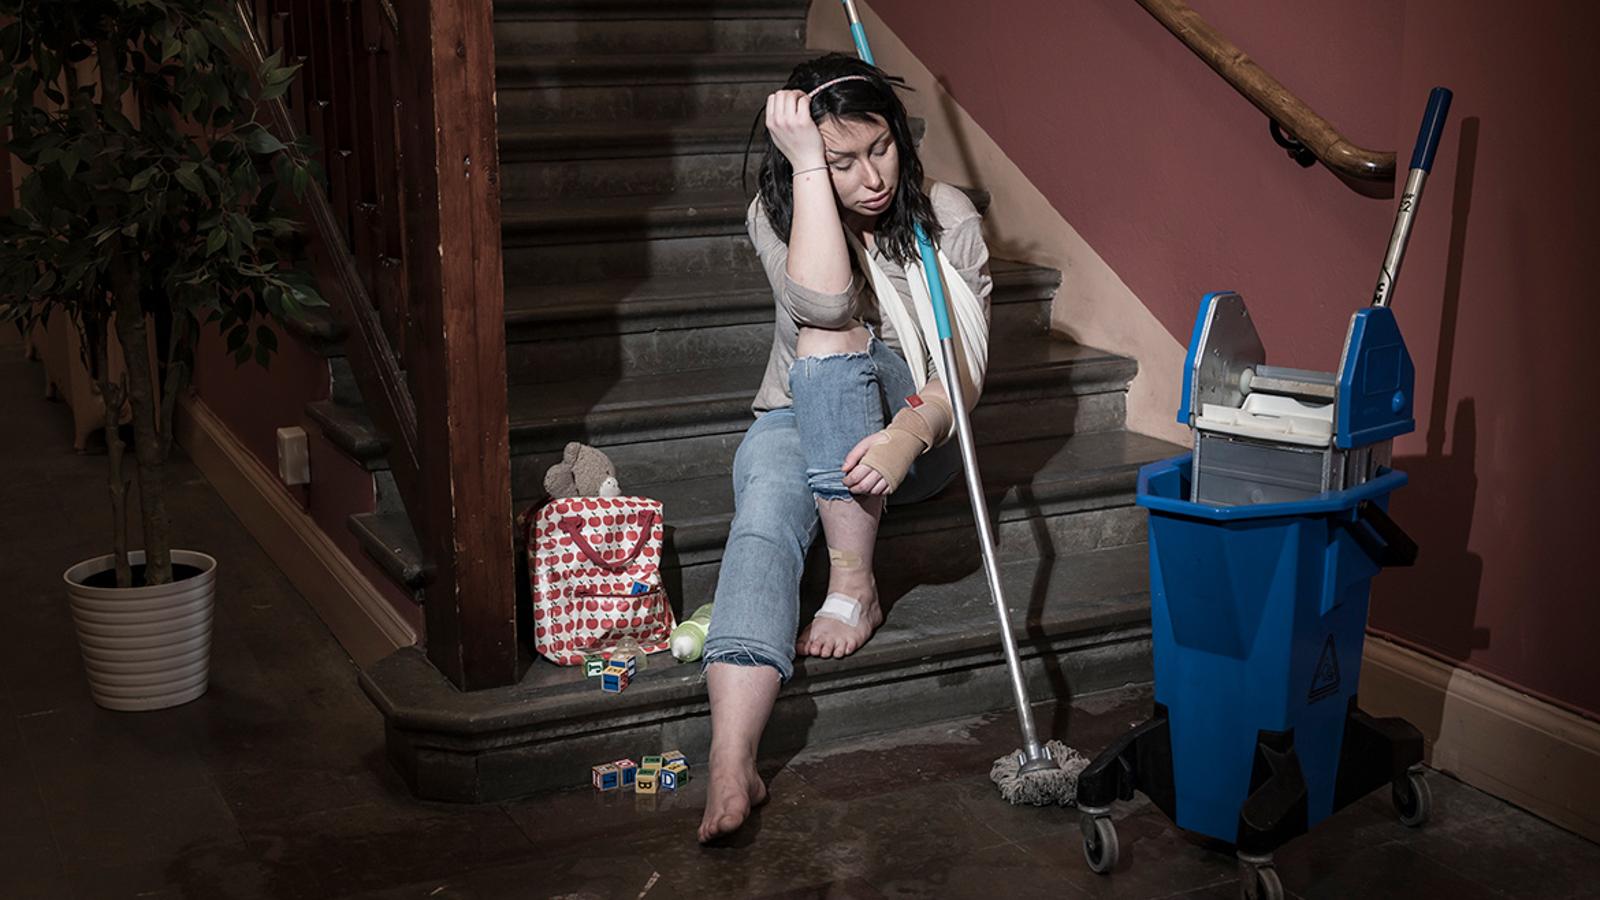 En ung och utmattad kvinna som sitter i en trappuppgång. Hon har ett plåster på ena foten och hennes ena handled är inlindad i bandage. Runtom henne står det städutrutsning.